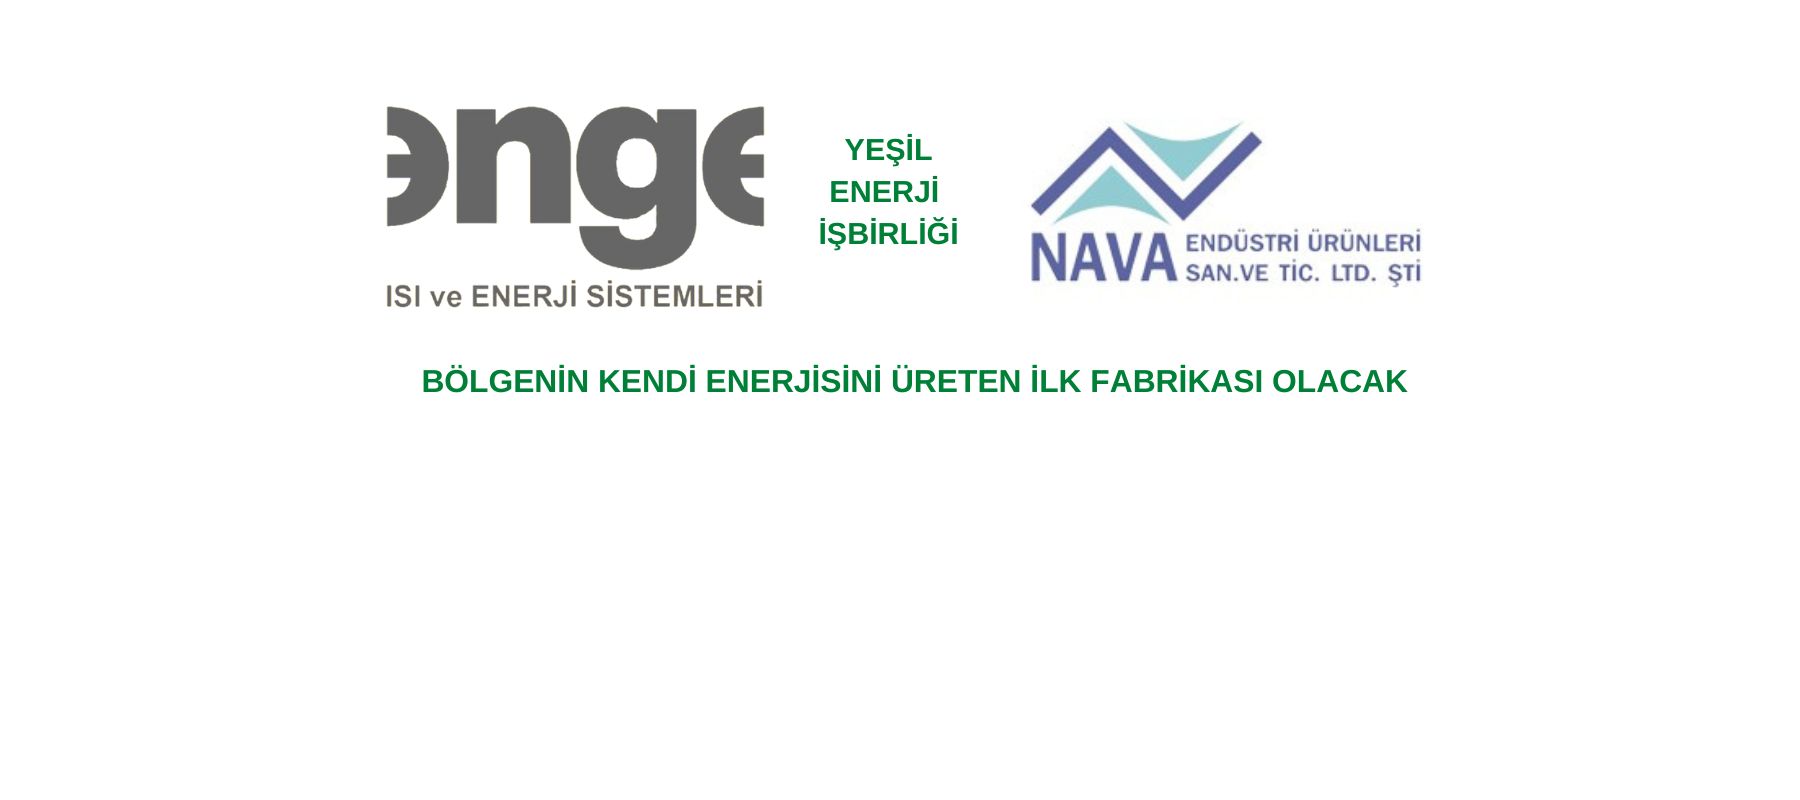 Enge Energy ile Nava Endüstri Ürünleri Arasında Yeşil Enerji İş Birliği